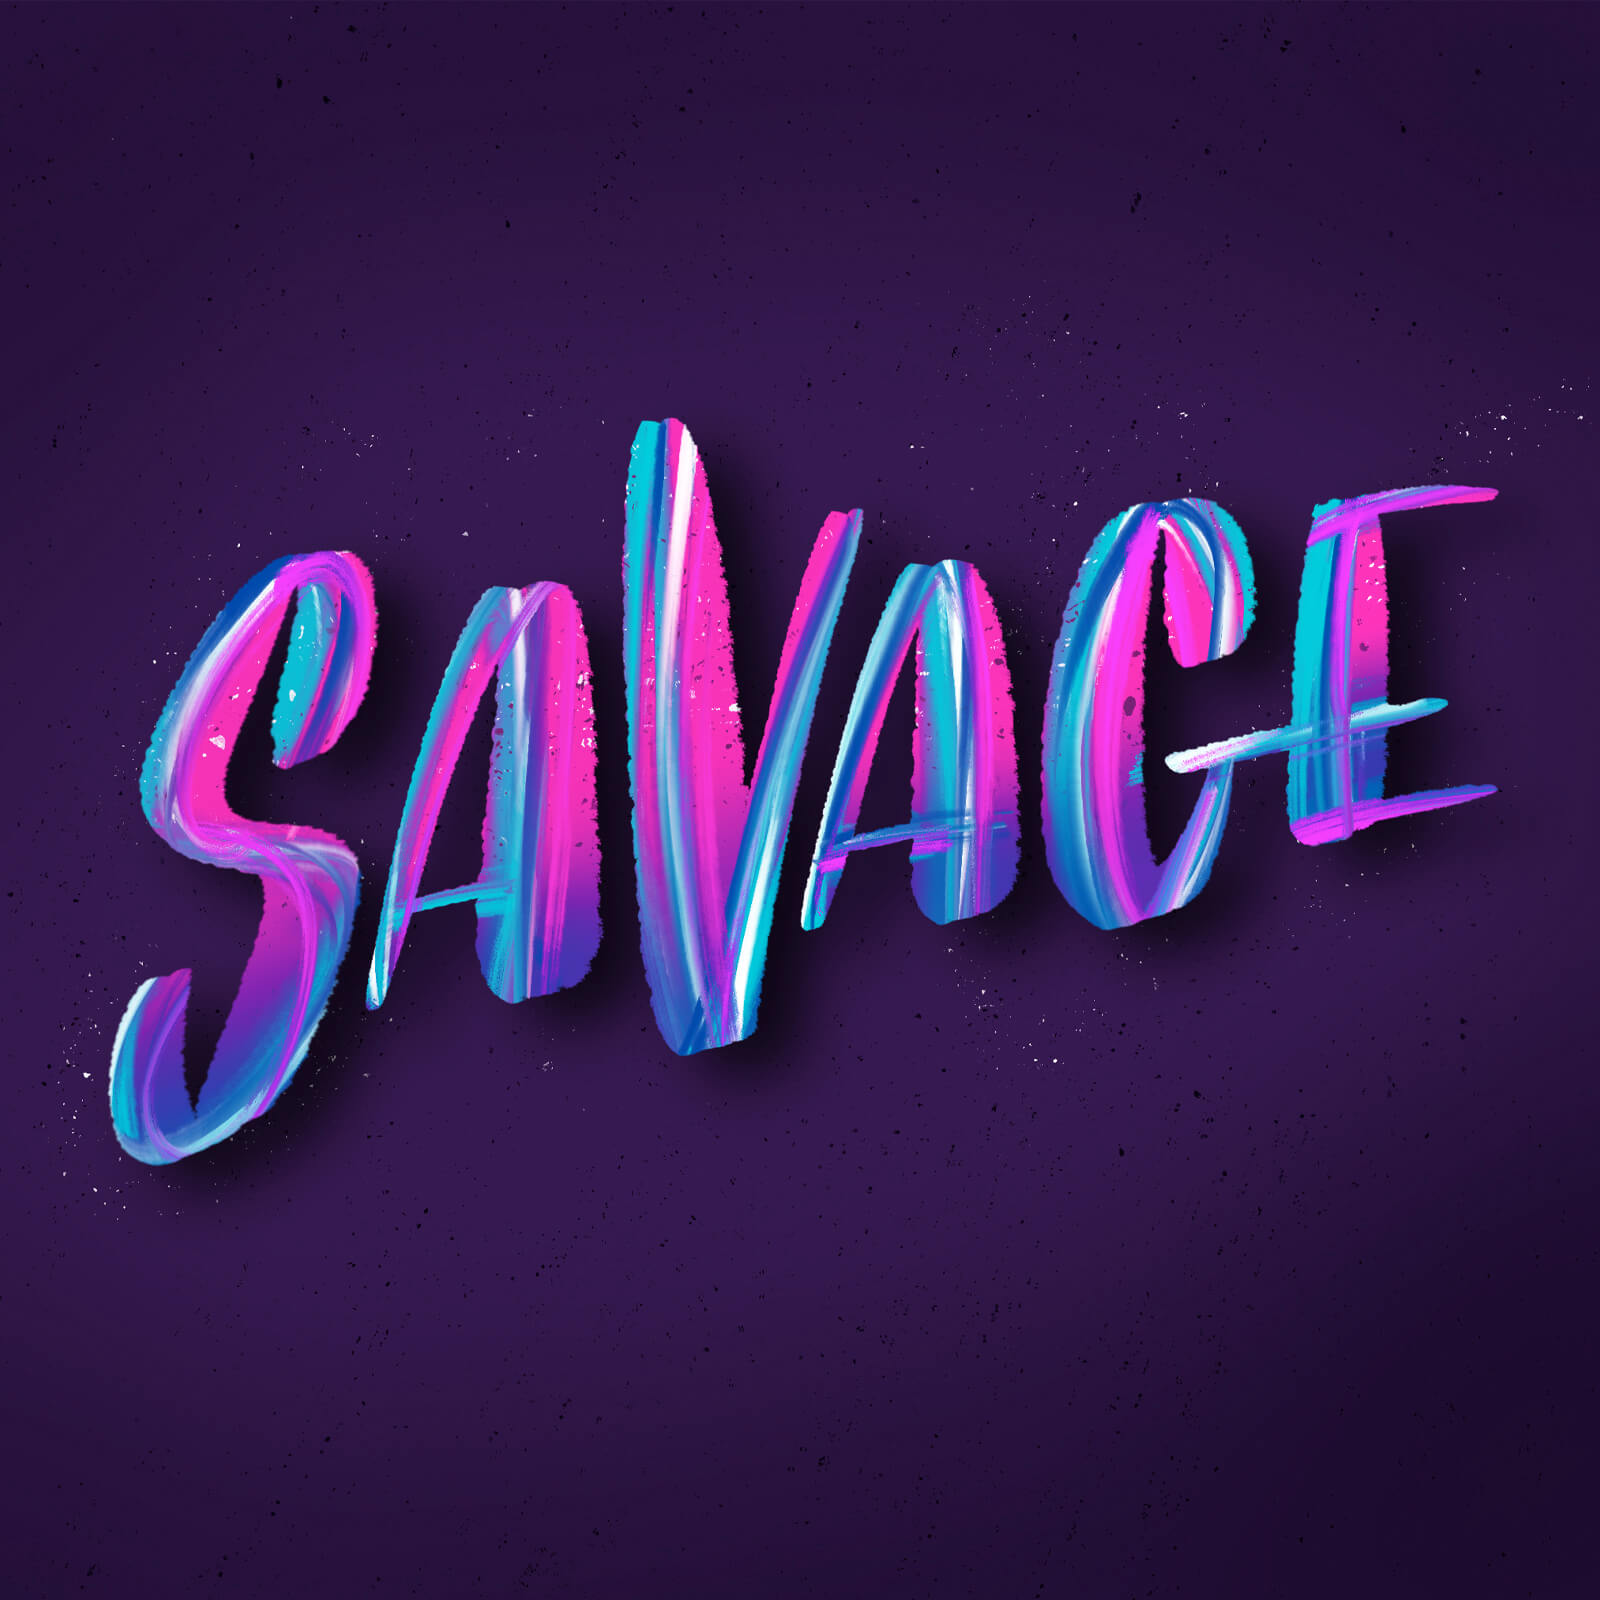 Savage - Komprehensive Design